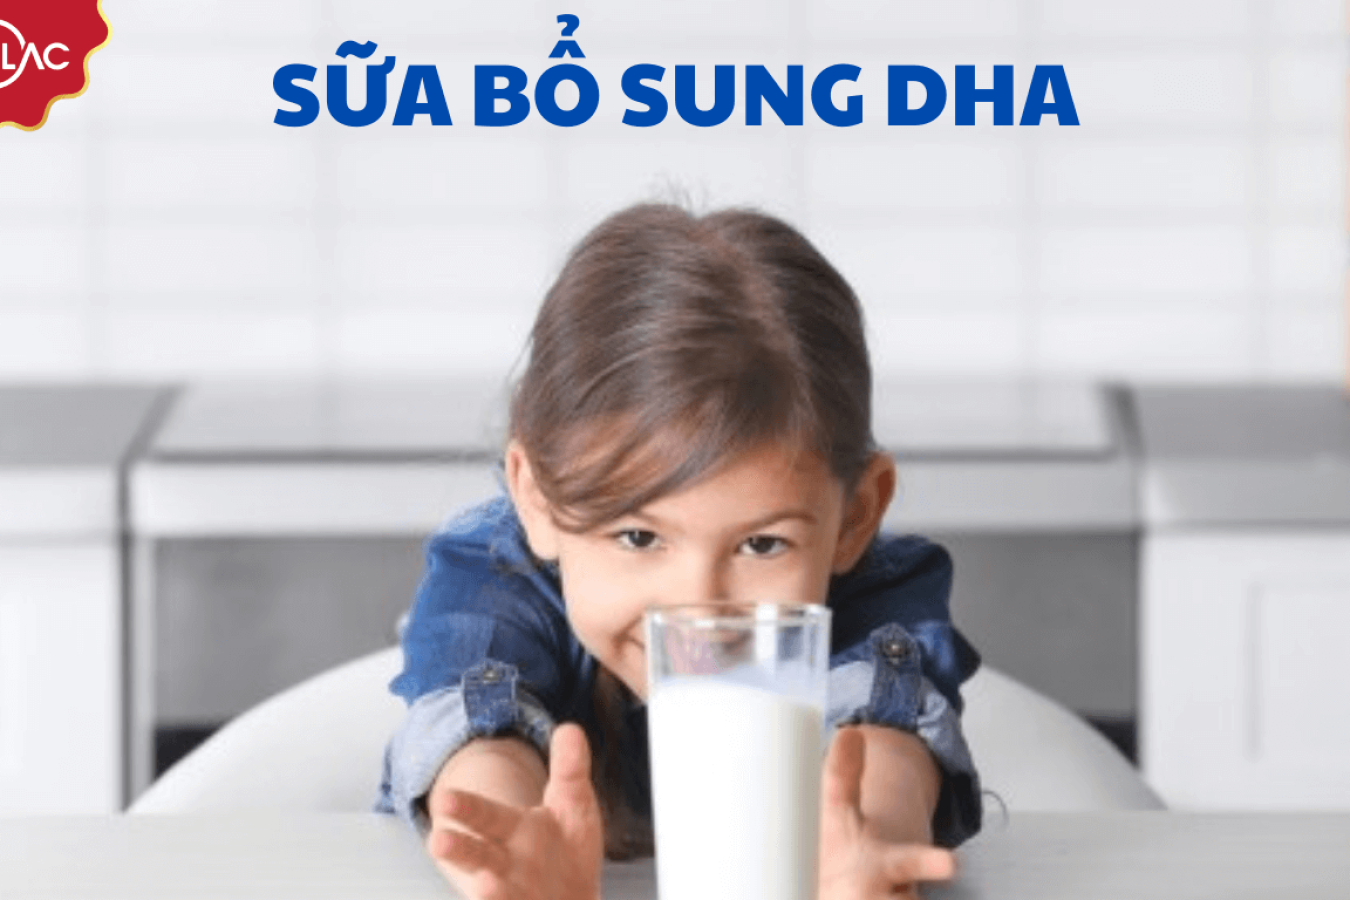 5 dòng sữa bổ sung DHA cho trẻ tốt nhất hiện nay